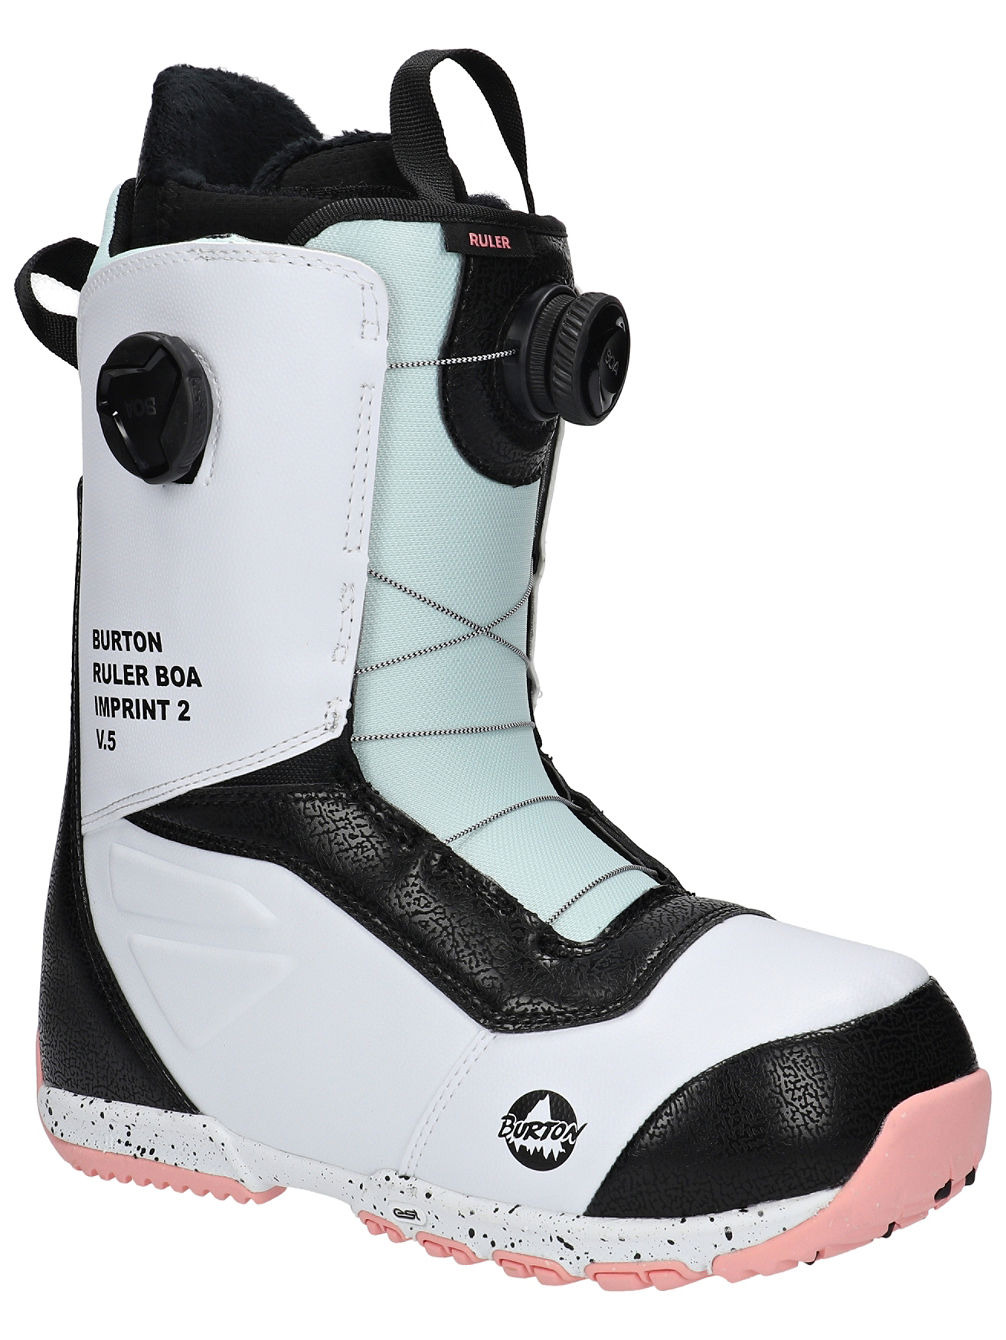 Ruler Boa 2021 Boots de Snowboard